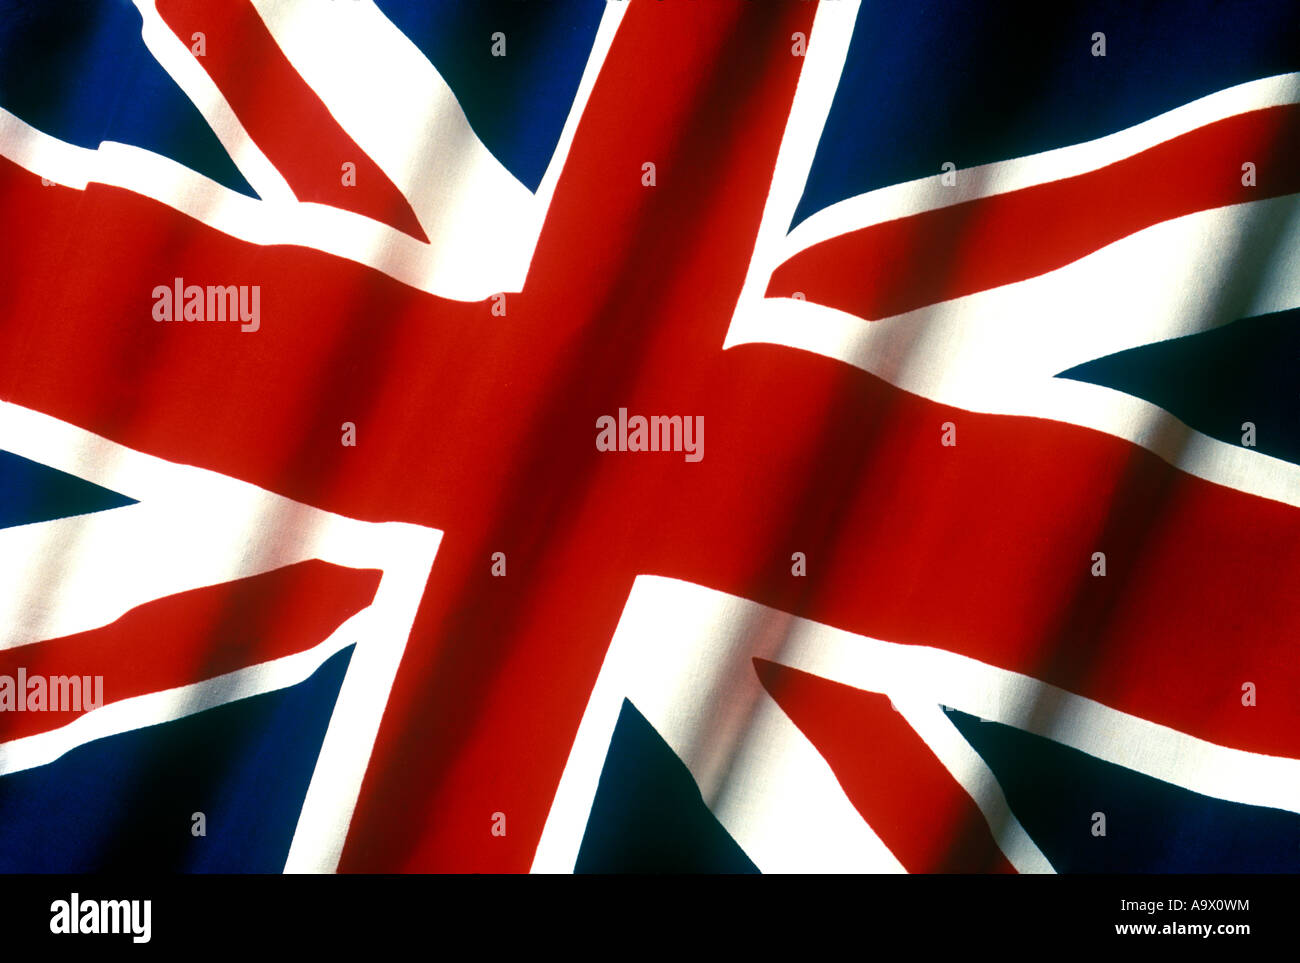 BRITISH UNION JACK FLAG FAIT DE COTON COUSU BUNTING Banque D'Images